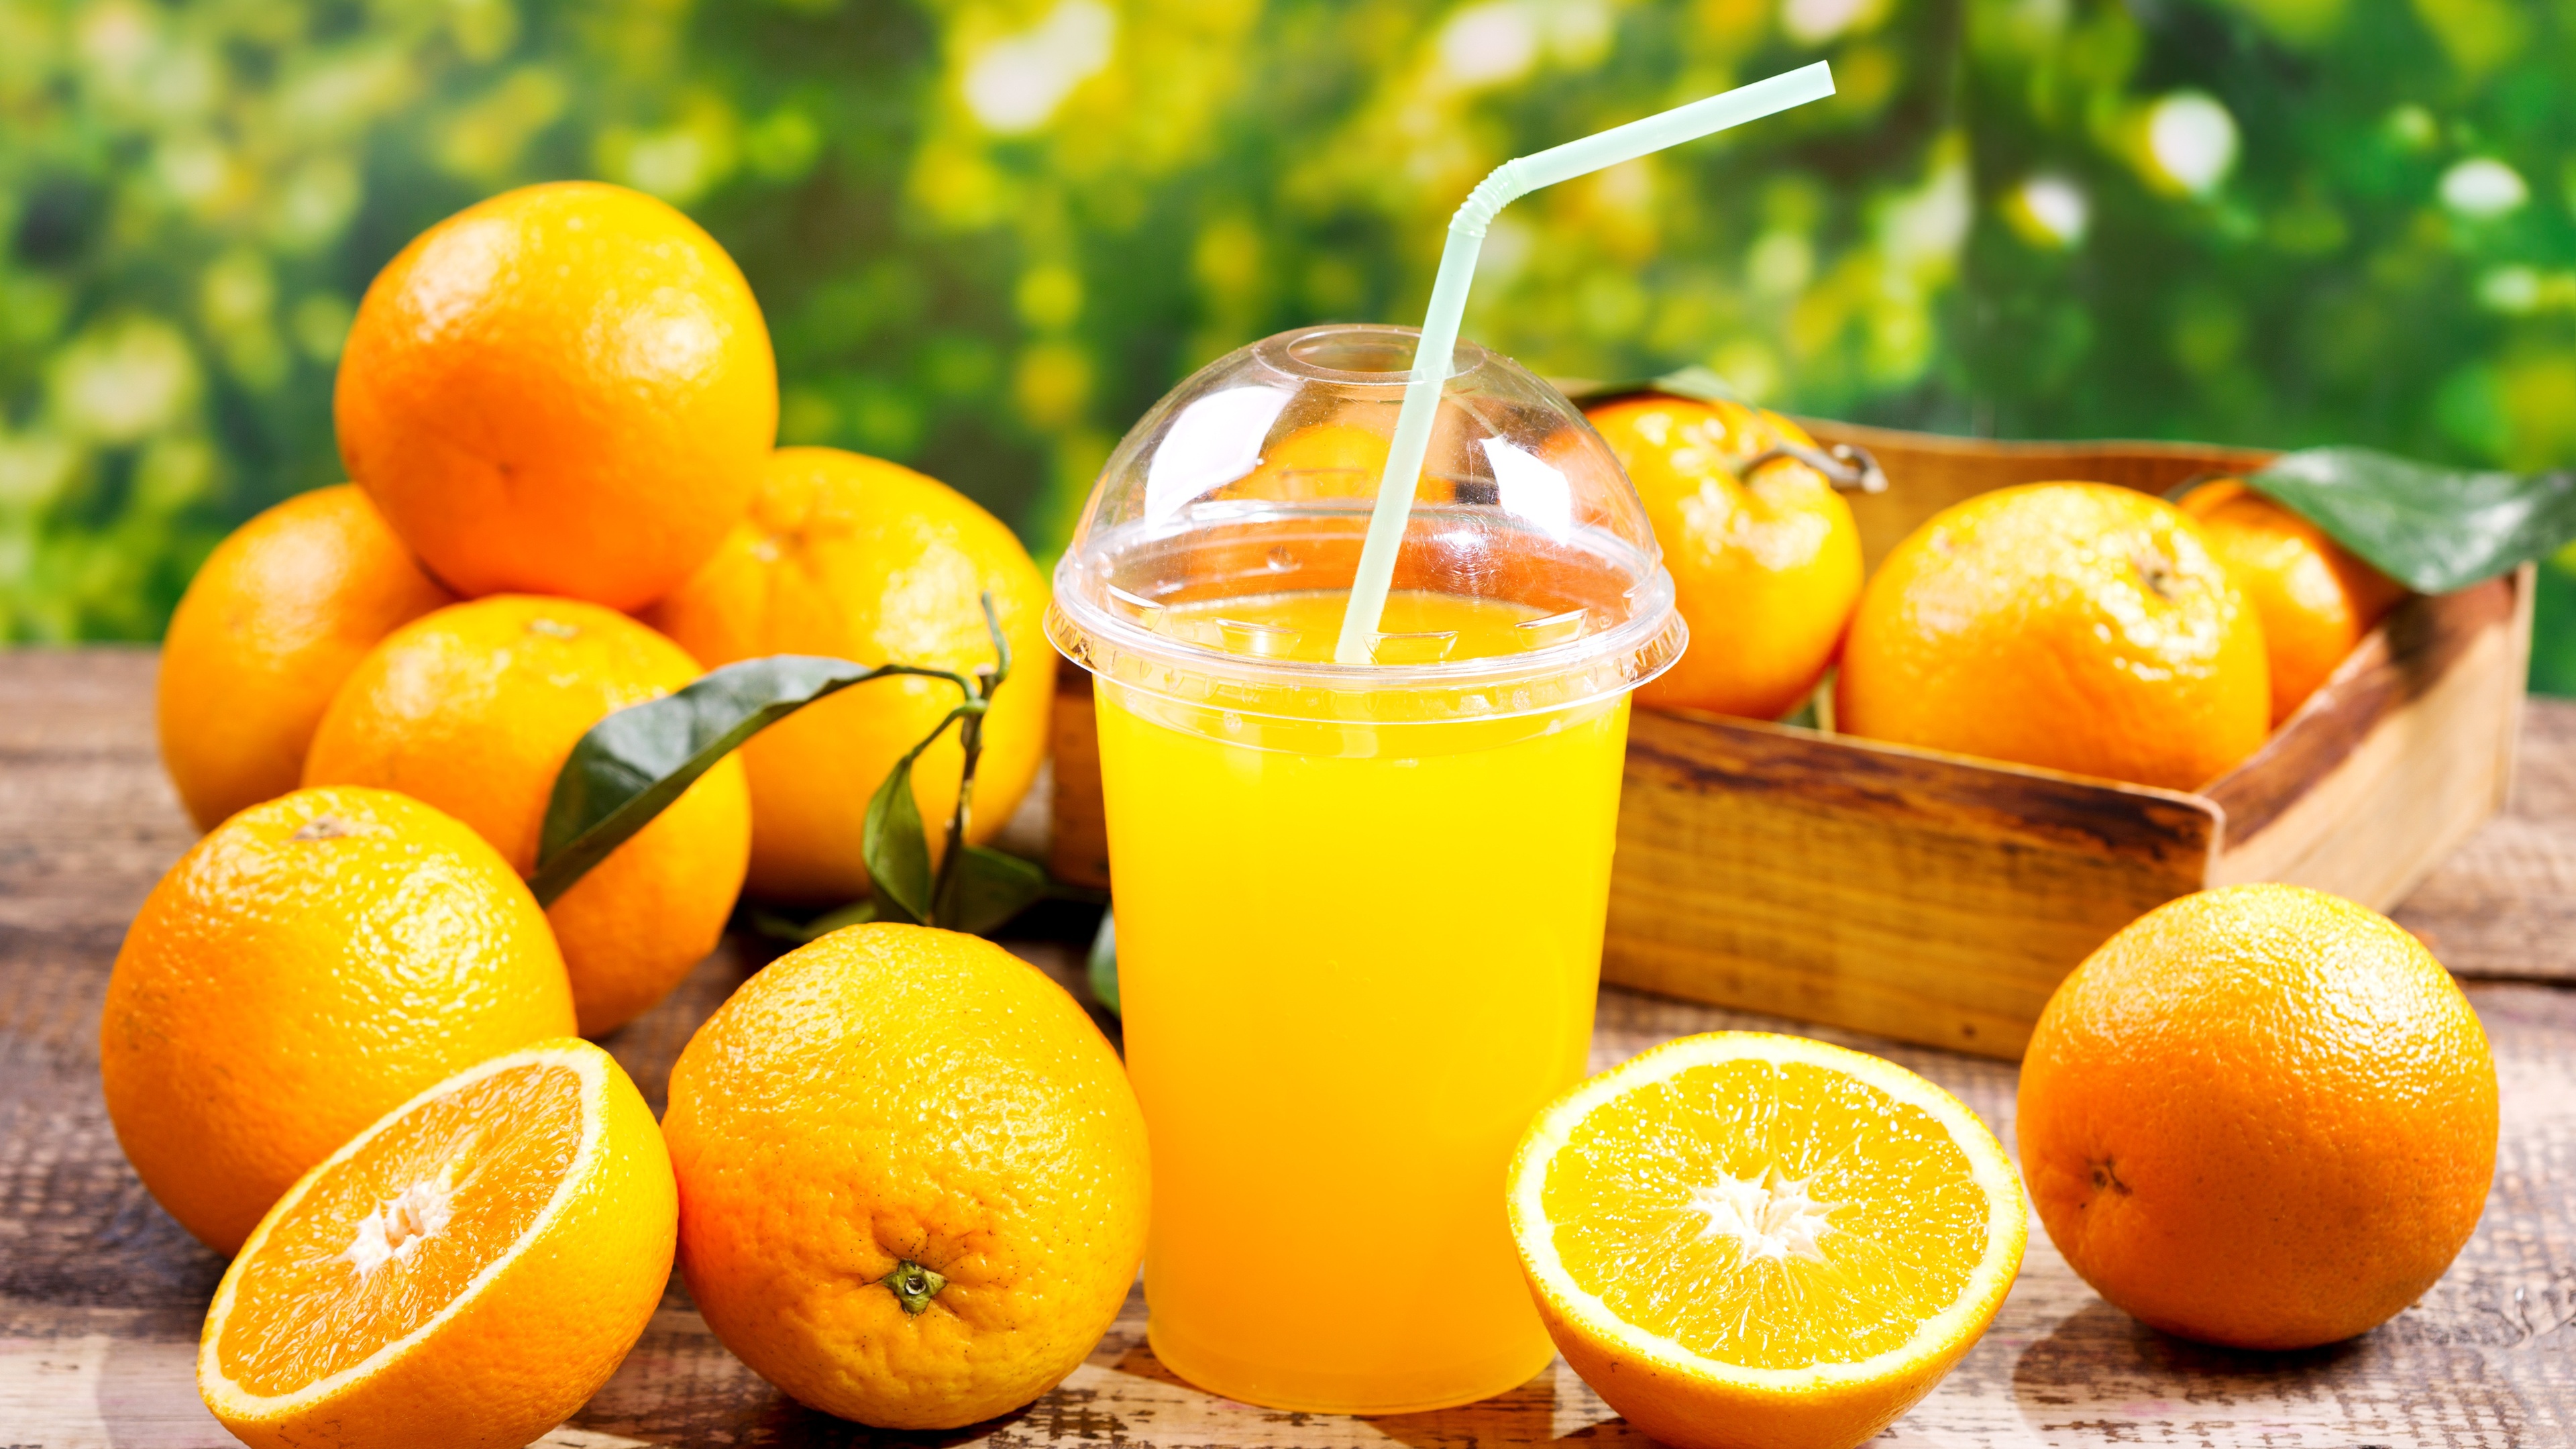 进口柳橙汁清关具体流程 - 哔哩哔哩